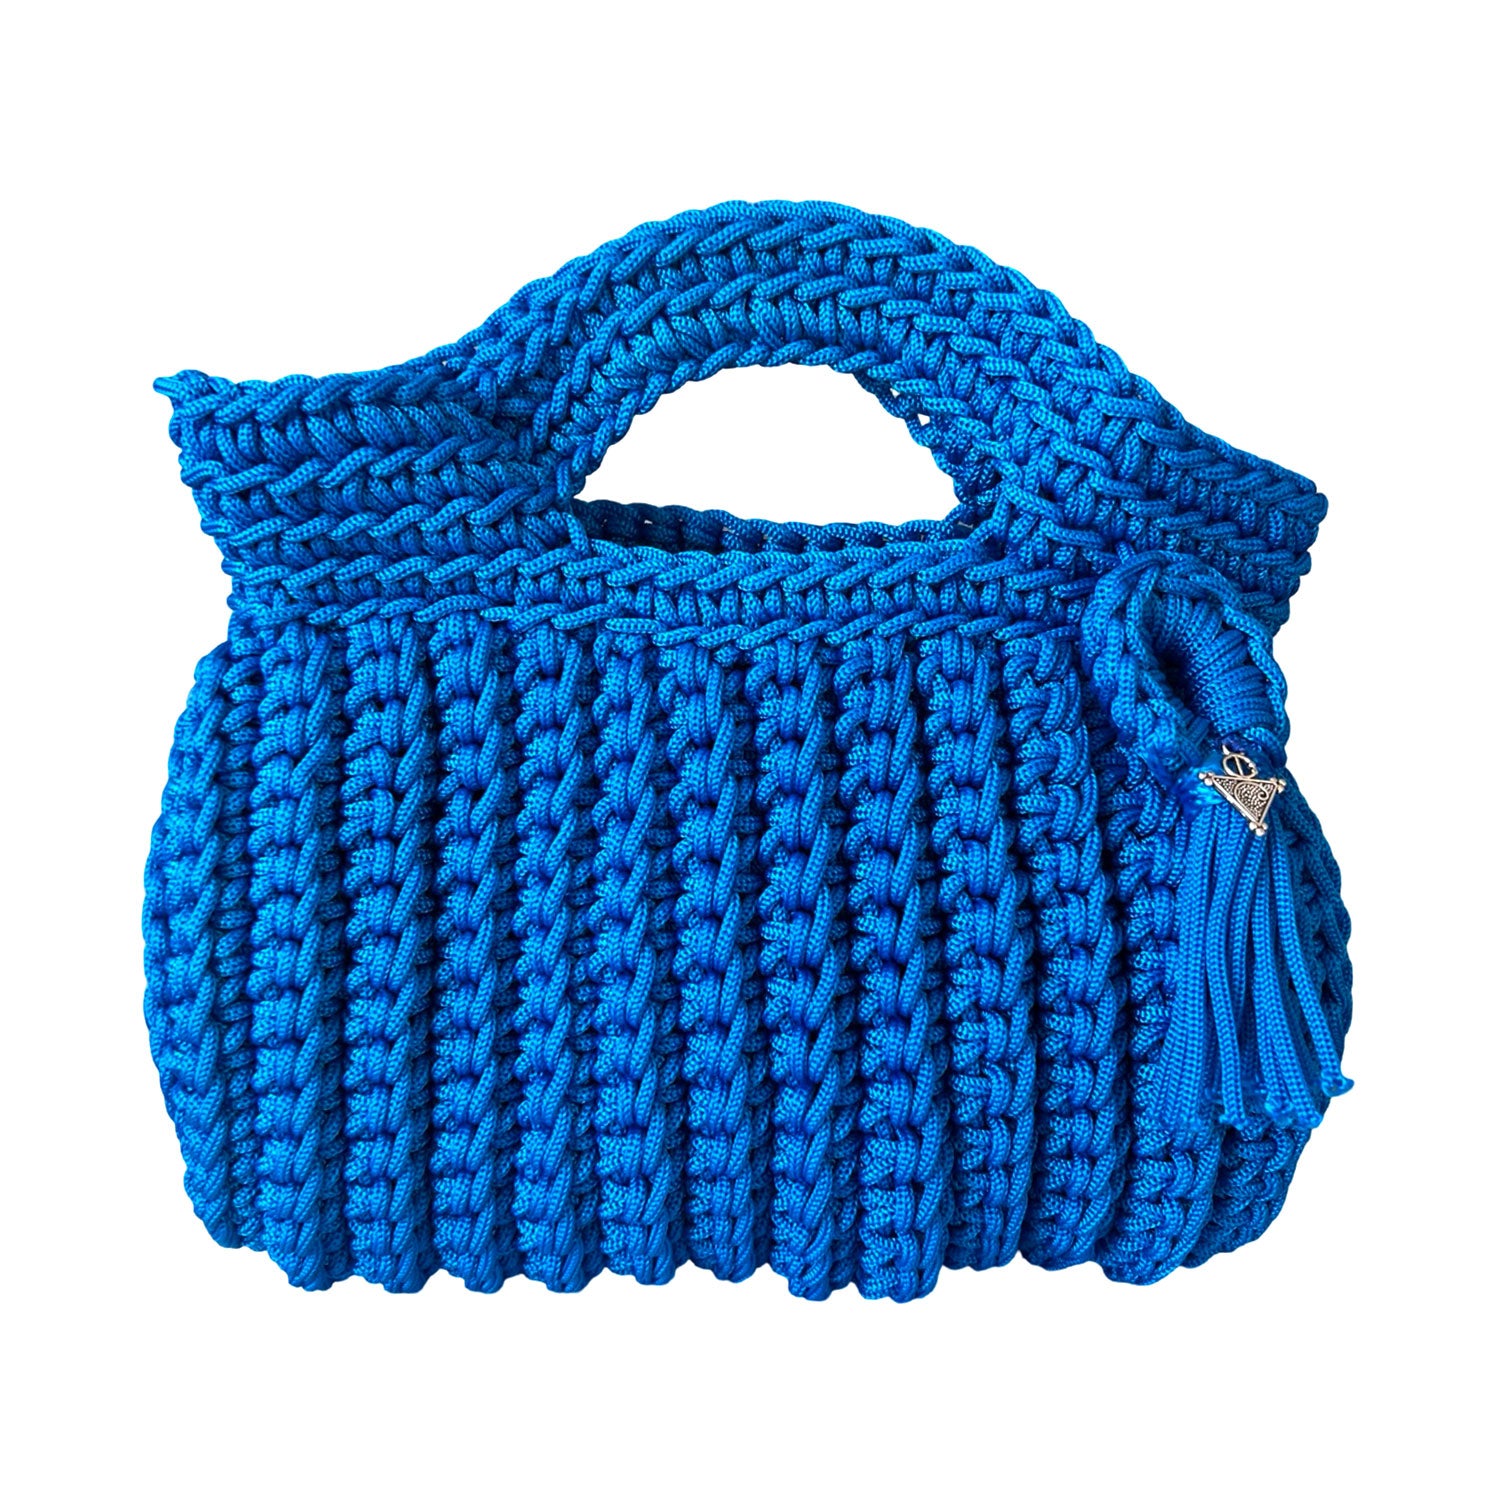 Mini Crochet Handbag in Cerulean Blue